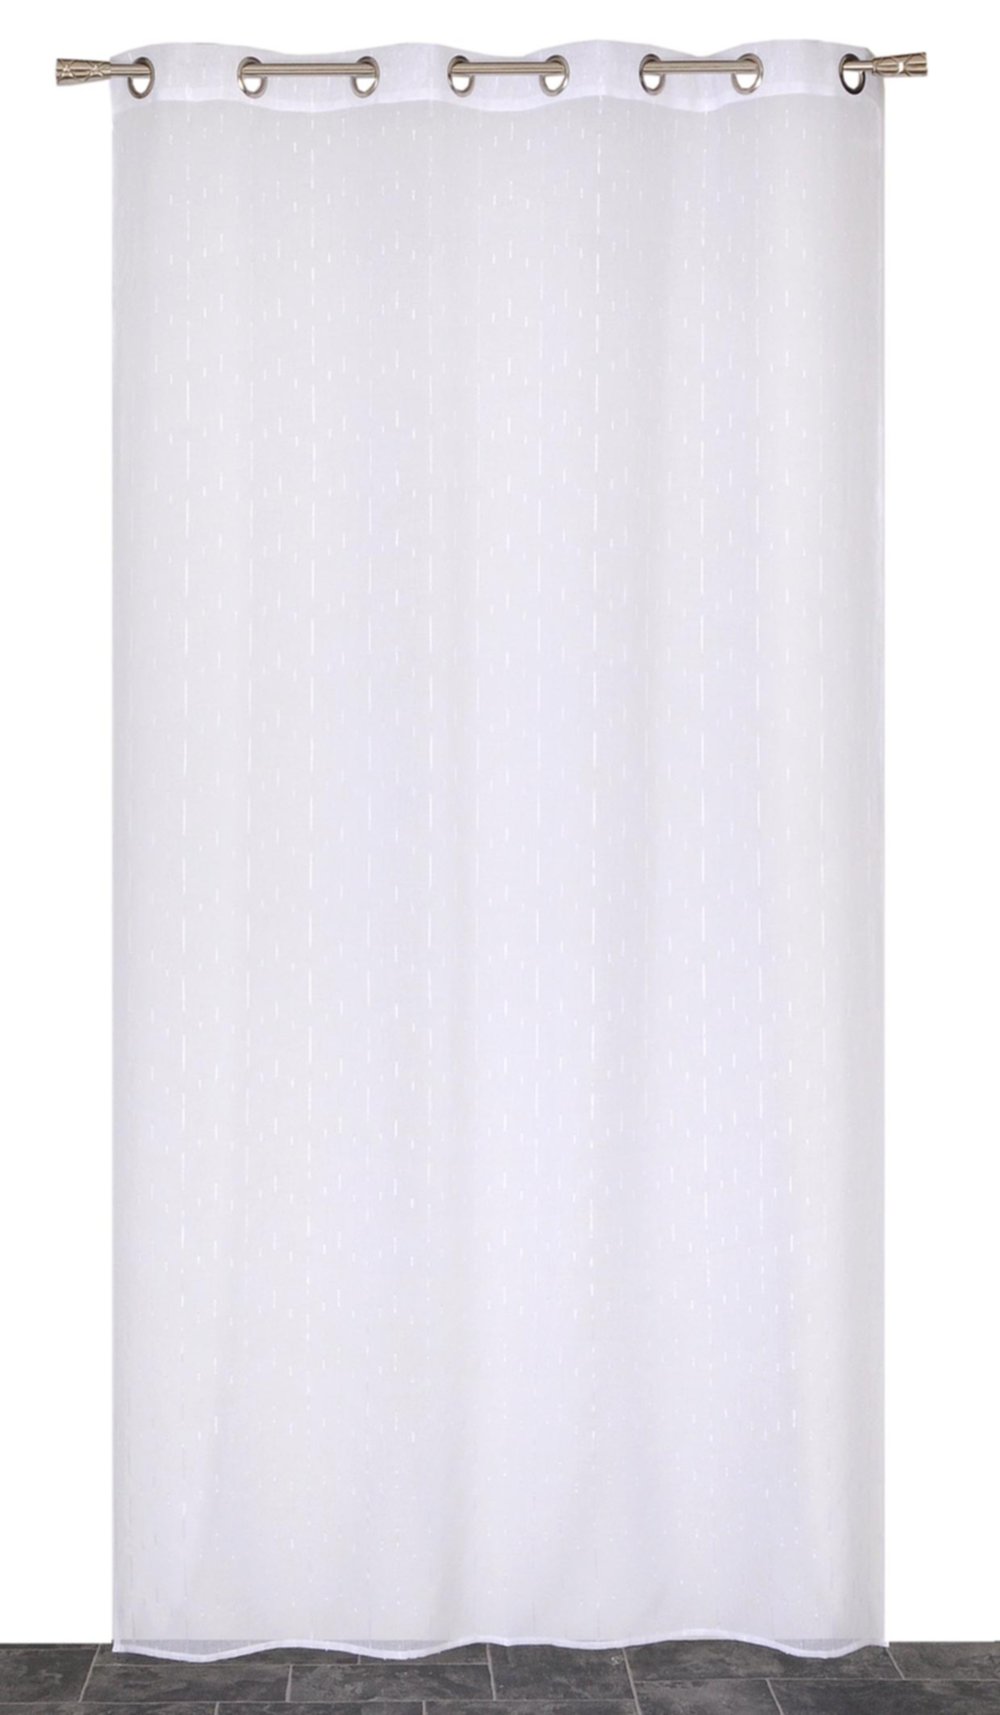 Voilage œillets étamine fils coupés blanc 240x240cm - DYLREV